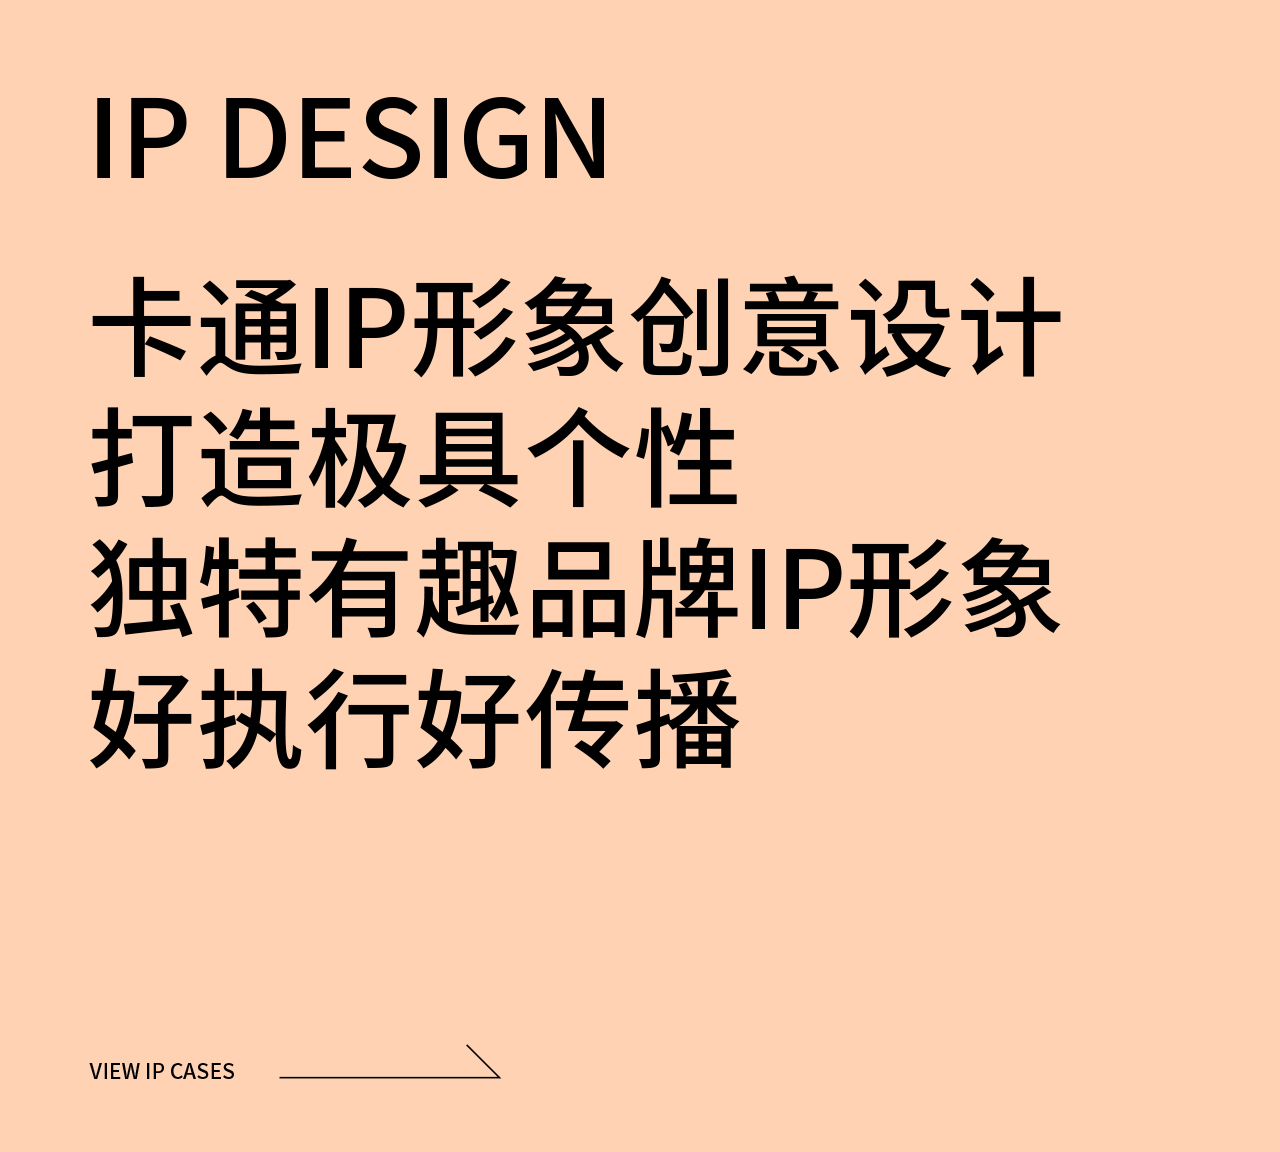 卡通IP形象设计策略与定位卡通IP创意设计执行卡通3D表情包创意设计卡通IP应用设计规范